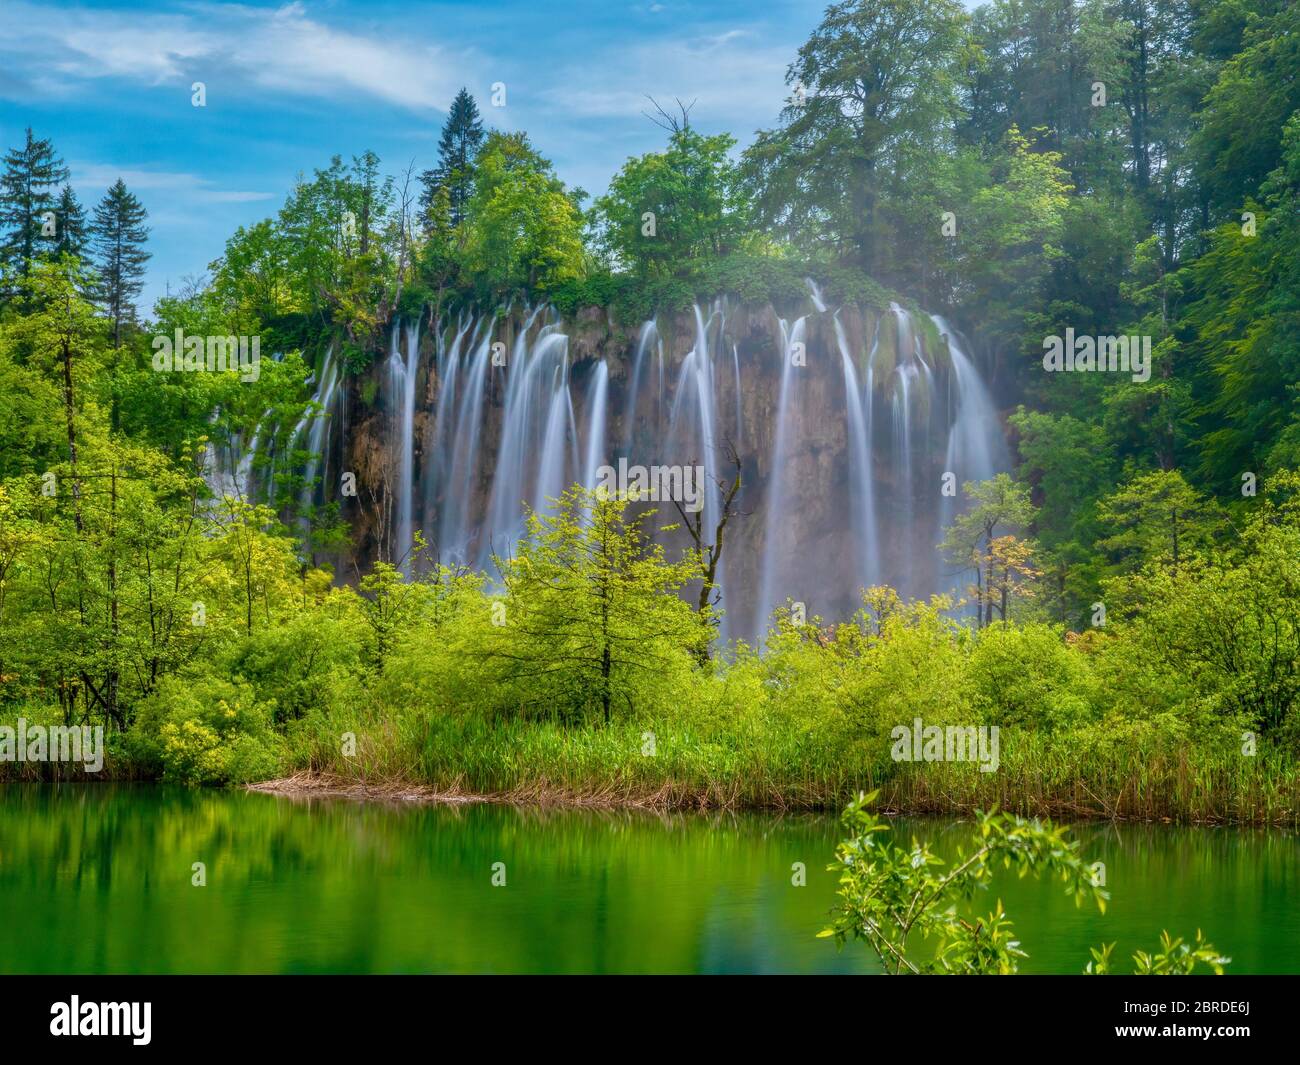 Larga exposición de un hermoso conjunto de cascadas en el vibrante bosque verde del Parque Nacional de los Lagos de Plitvice, Croacia. Foto de stock